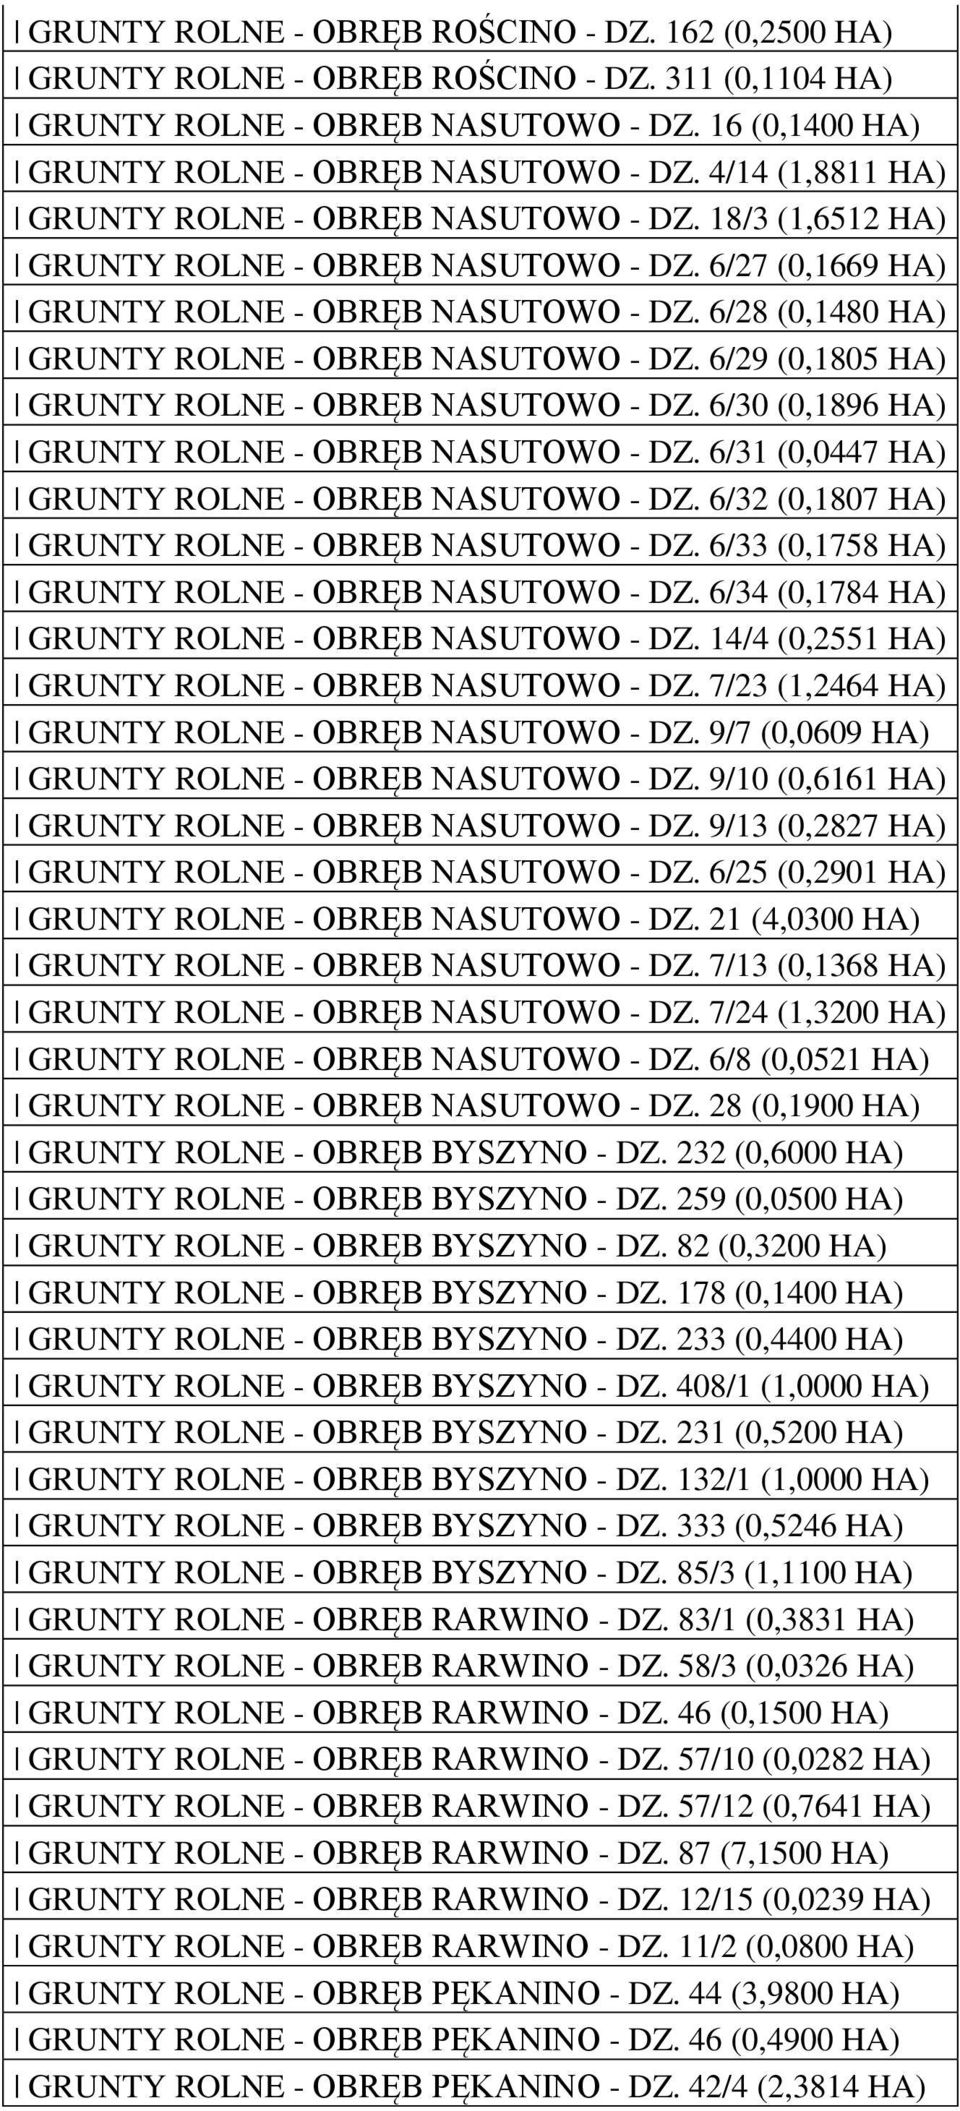 6/29 (0,1805 GRUNTY ROLNE - OBRĘB NASUTOWO - DZ. 6/30 (0,1896 GRUNTY ROLNE - OBRĘB NASUTOWO - DZ. 6/31 (0,0447 GRUNTY ROLNE - OBRĘB NASUTOWO - DZ. 6/32 (0,1807 GRUNTY ROLNE - OBRĘB NASUTOWO - DZ.